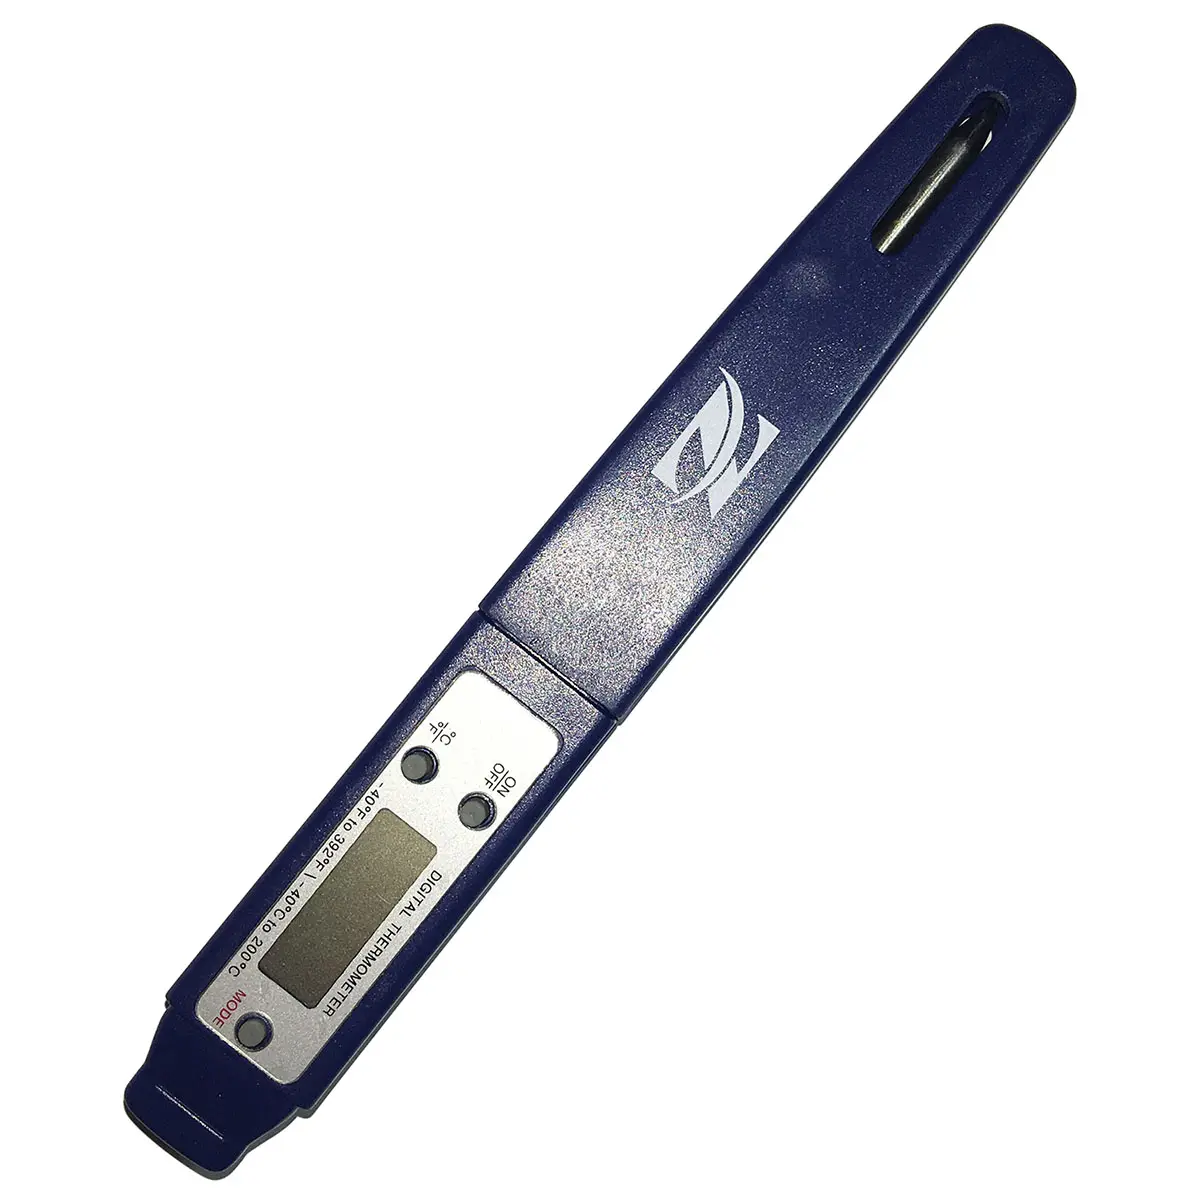 Thermomètre numérique NORMAL ET7620, prix de gros pas cher